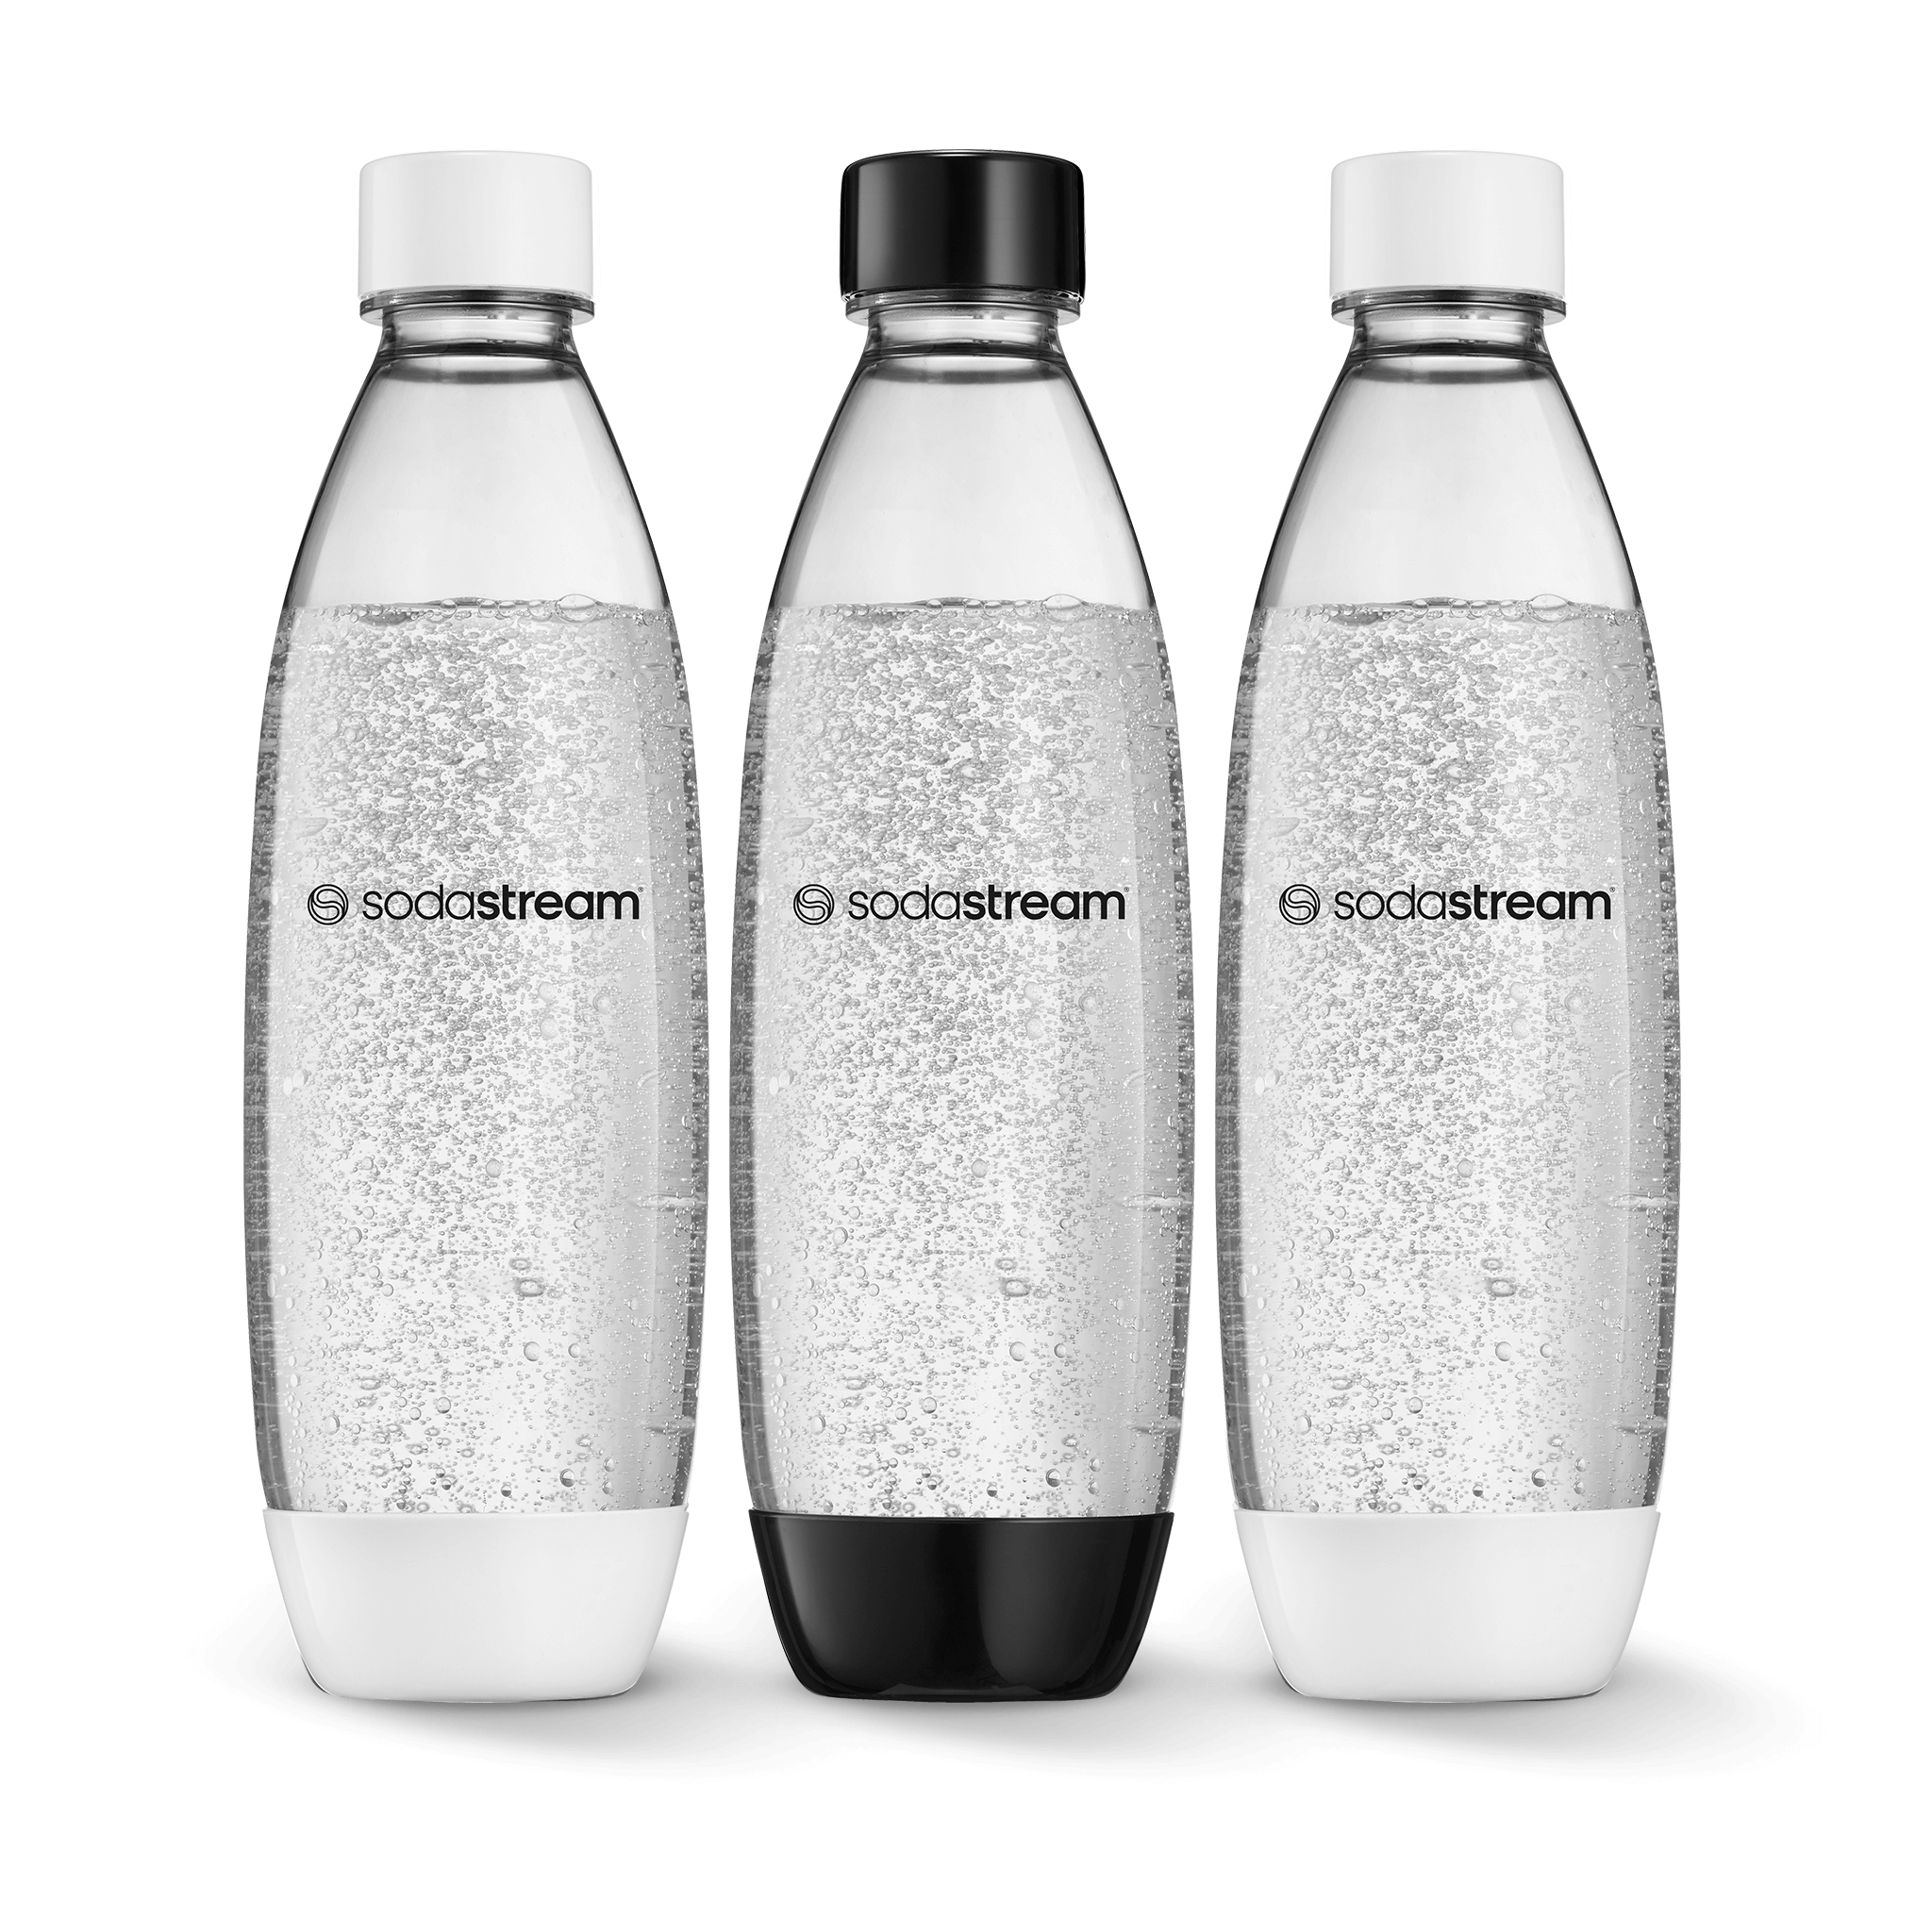 שלישיית בקבוקי פלסטיק בצבע שחור-לבן בנפח 1 ליטר* sodastream